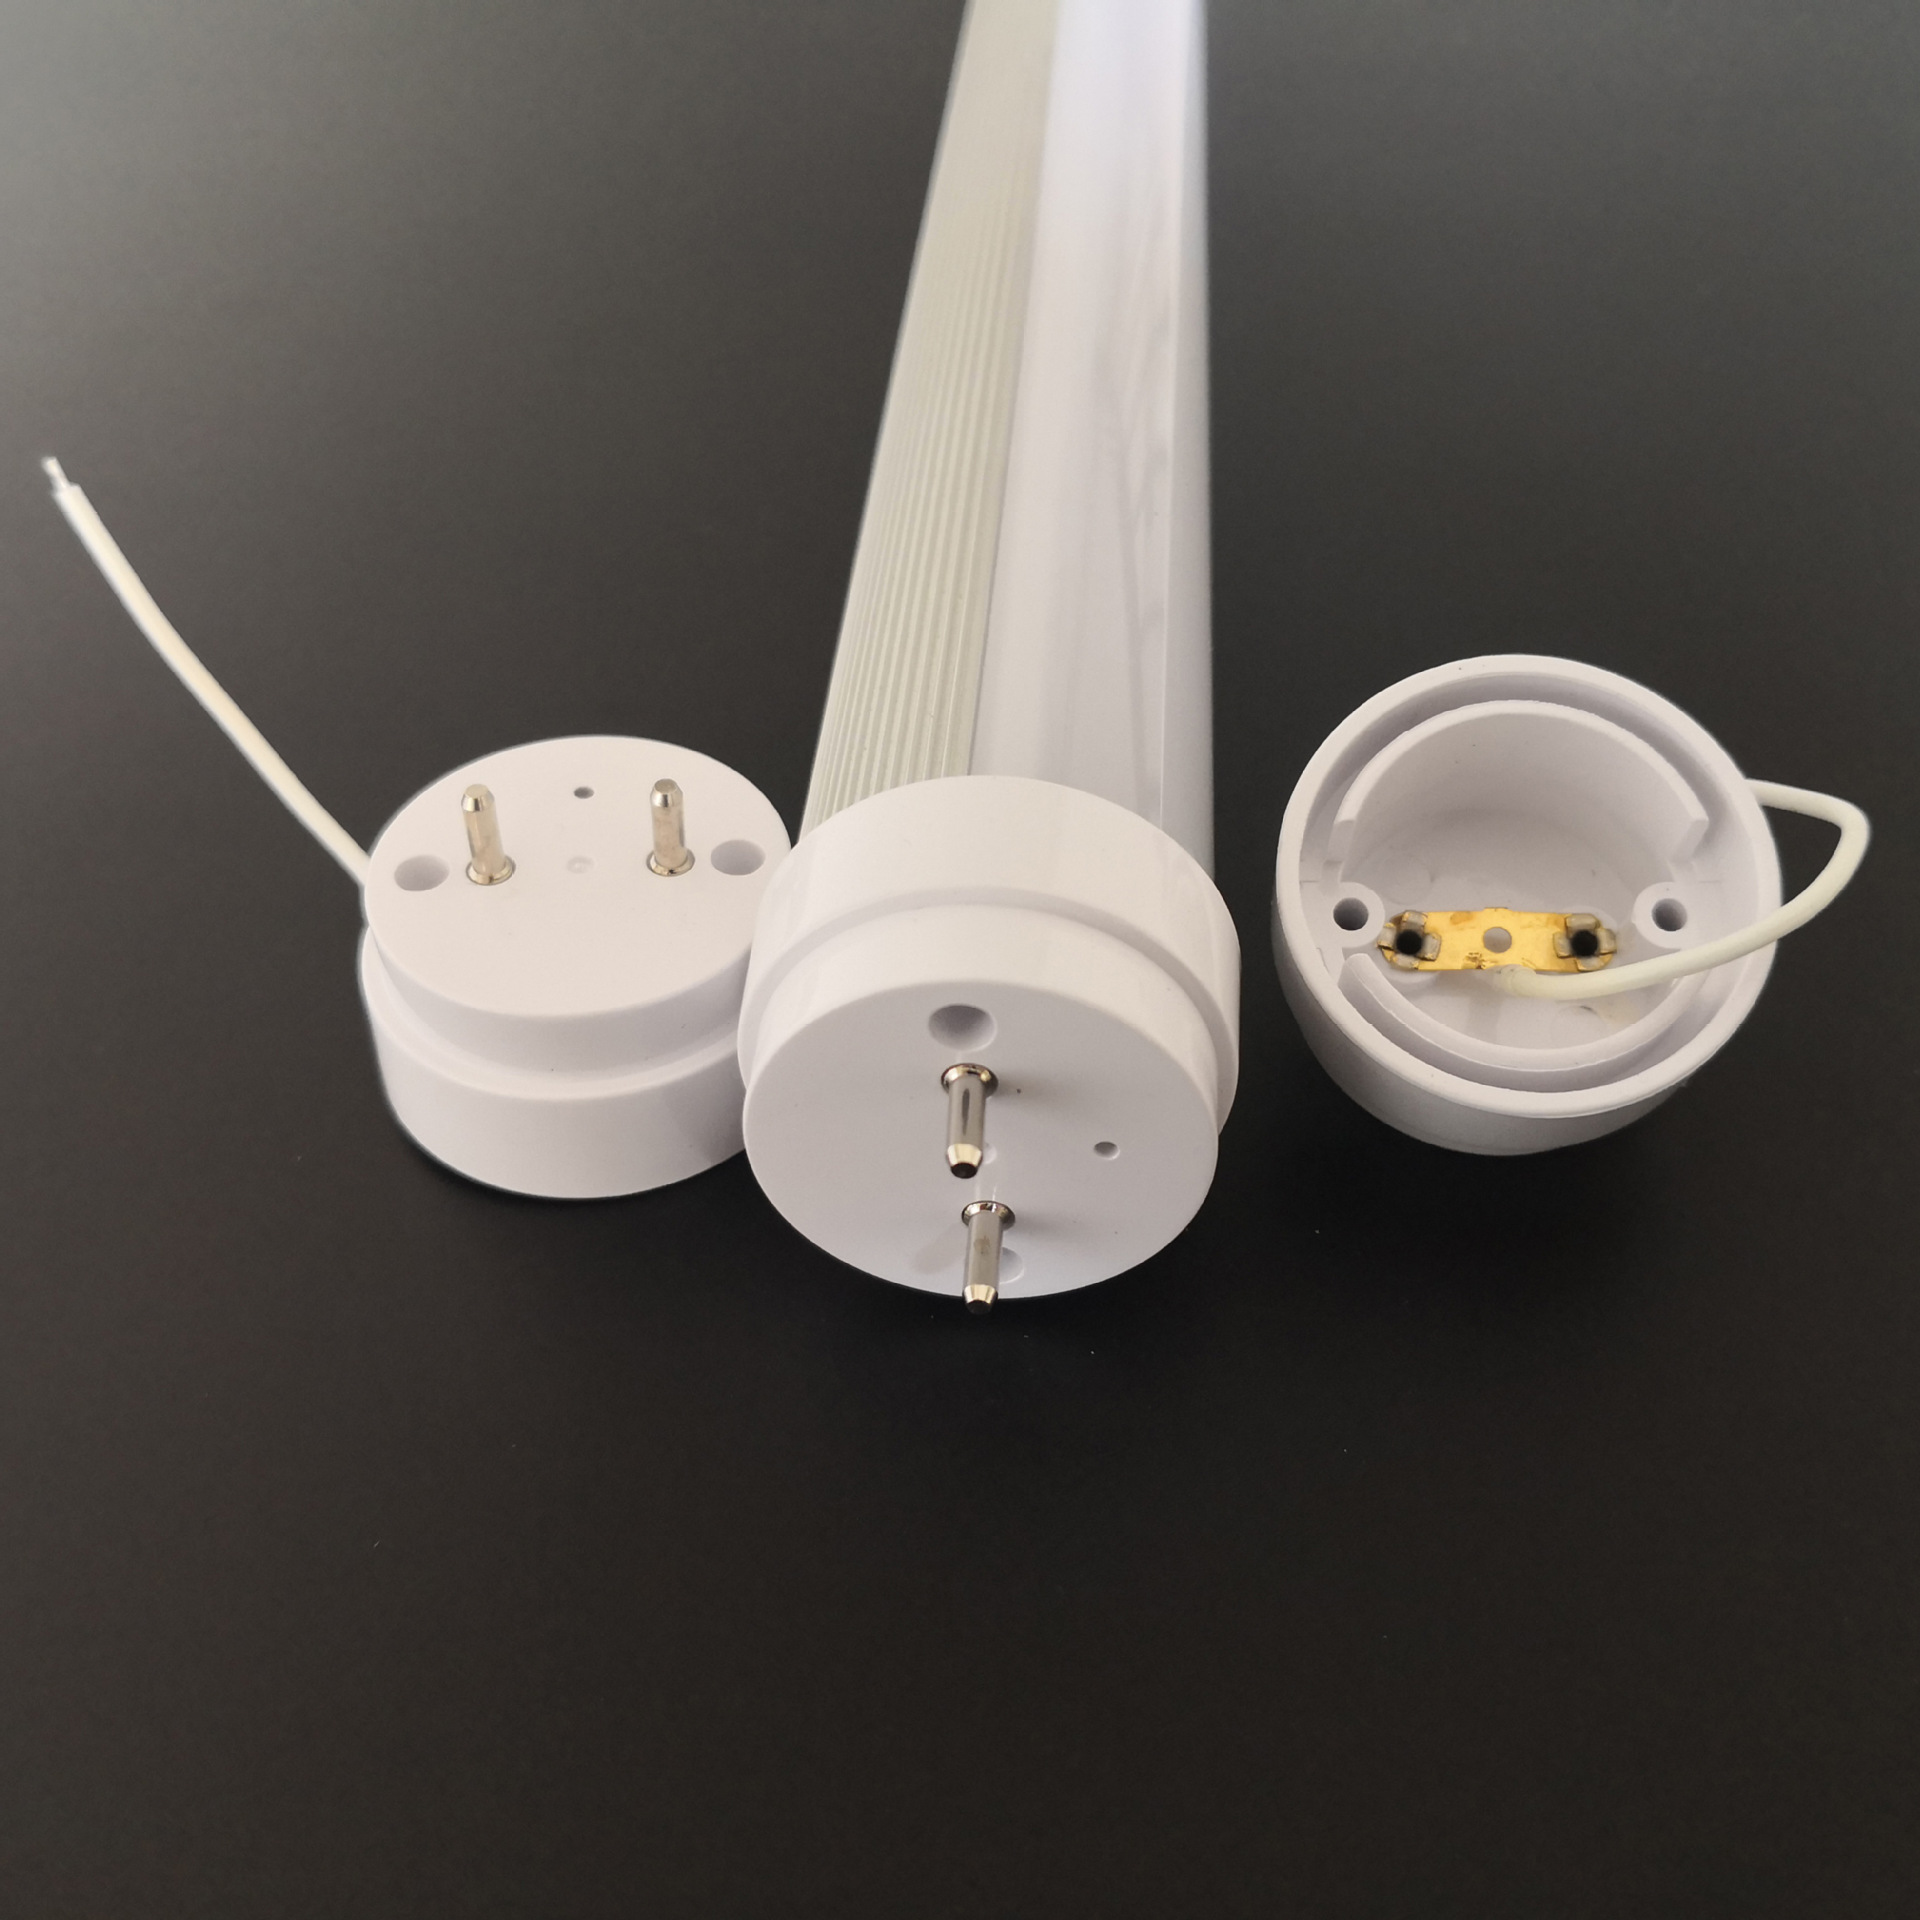 Các yêu cầu về hình dạng và chống cháy của nguyên liệu thô cho vỏ đèn LED